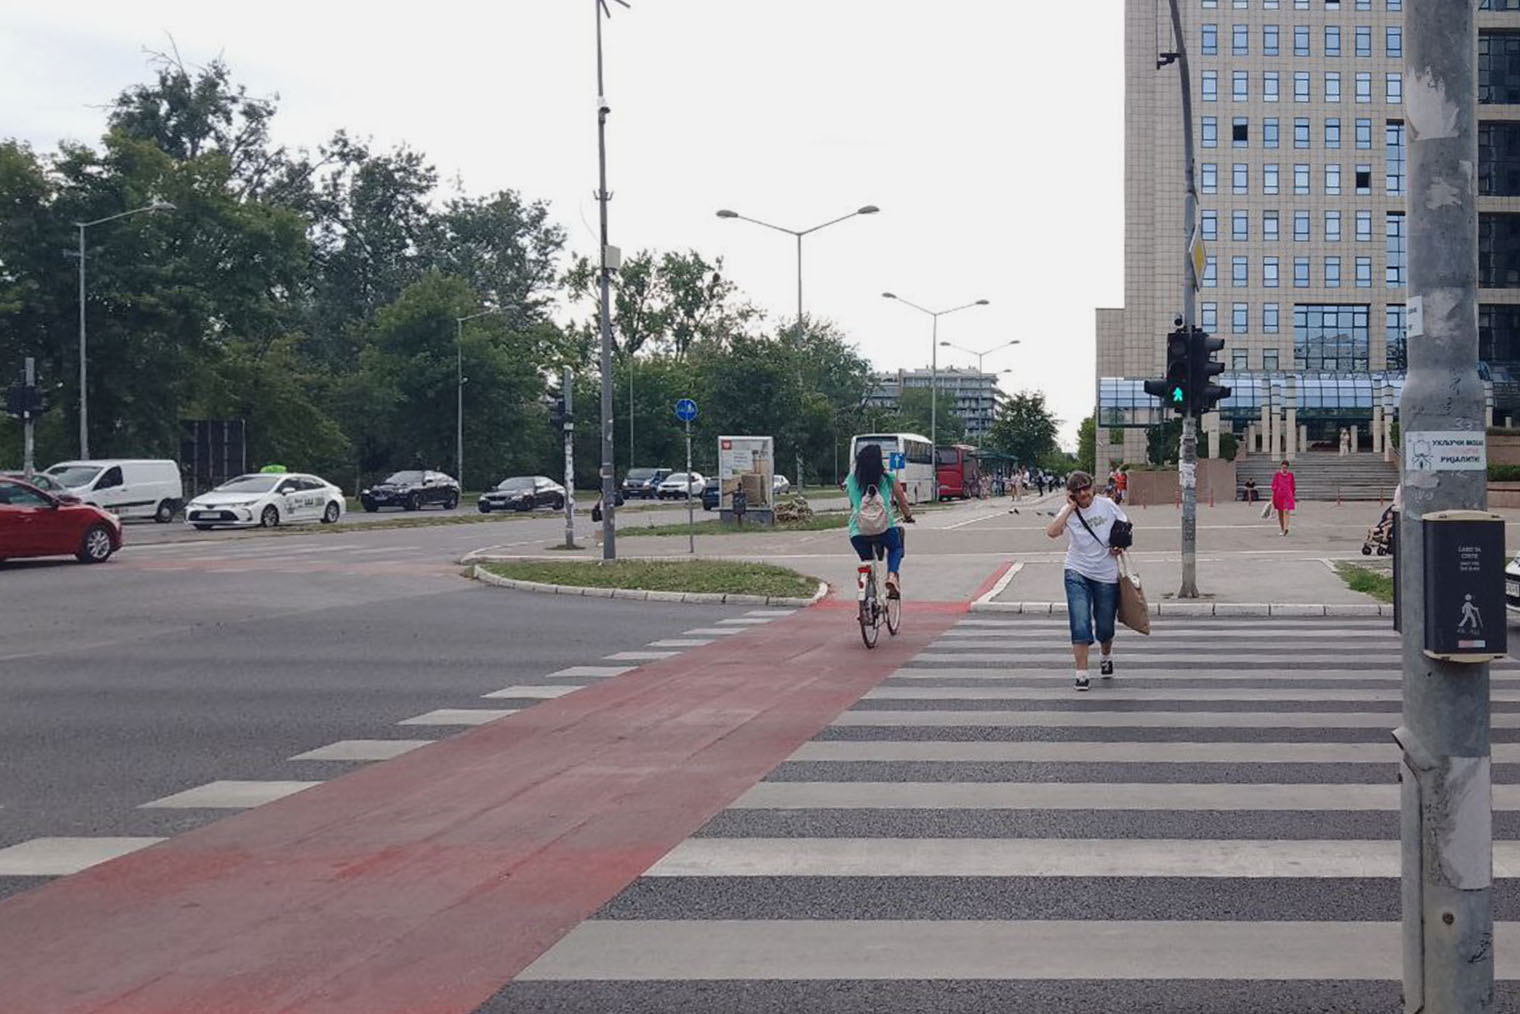 В отличие от холмистого Белграда, в Нови⁠-⁠Саде равнинная местность. Так что велосипедистам комфортно кататься по городу